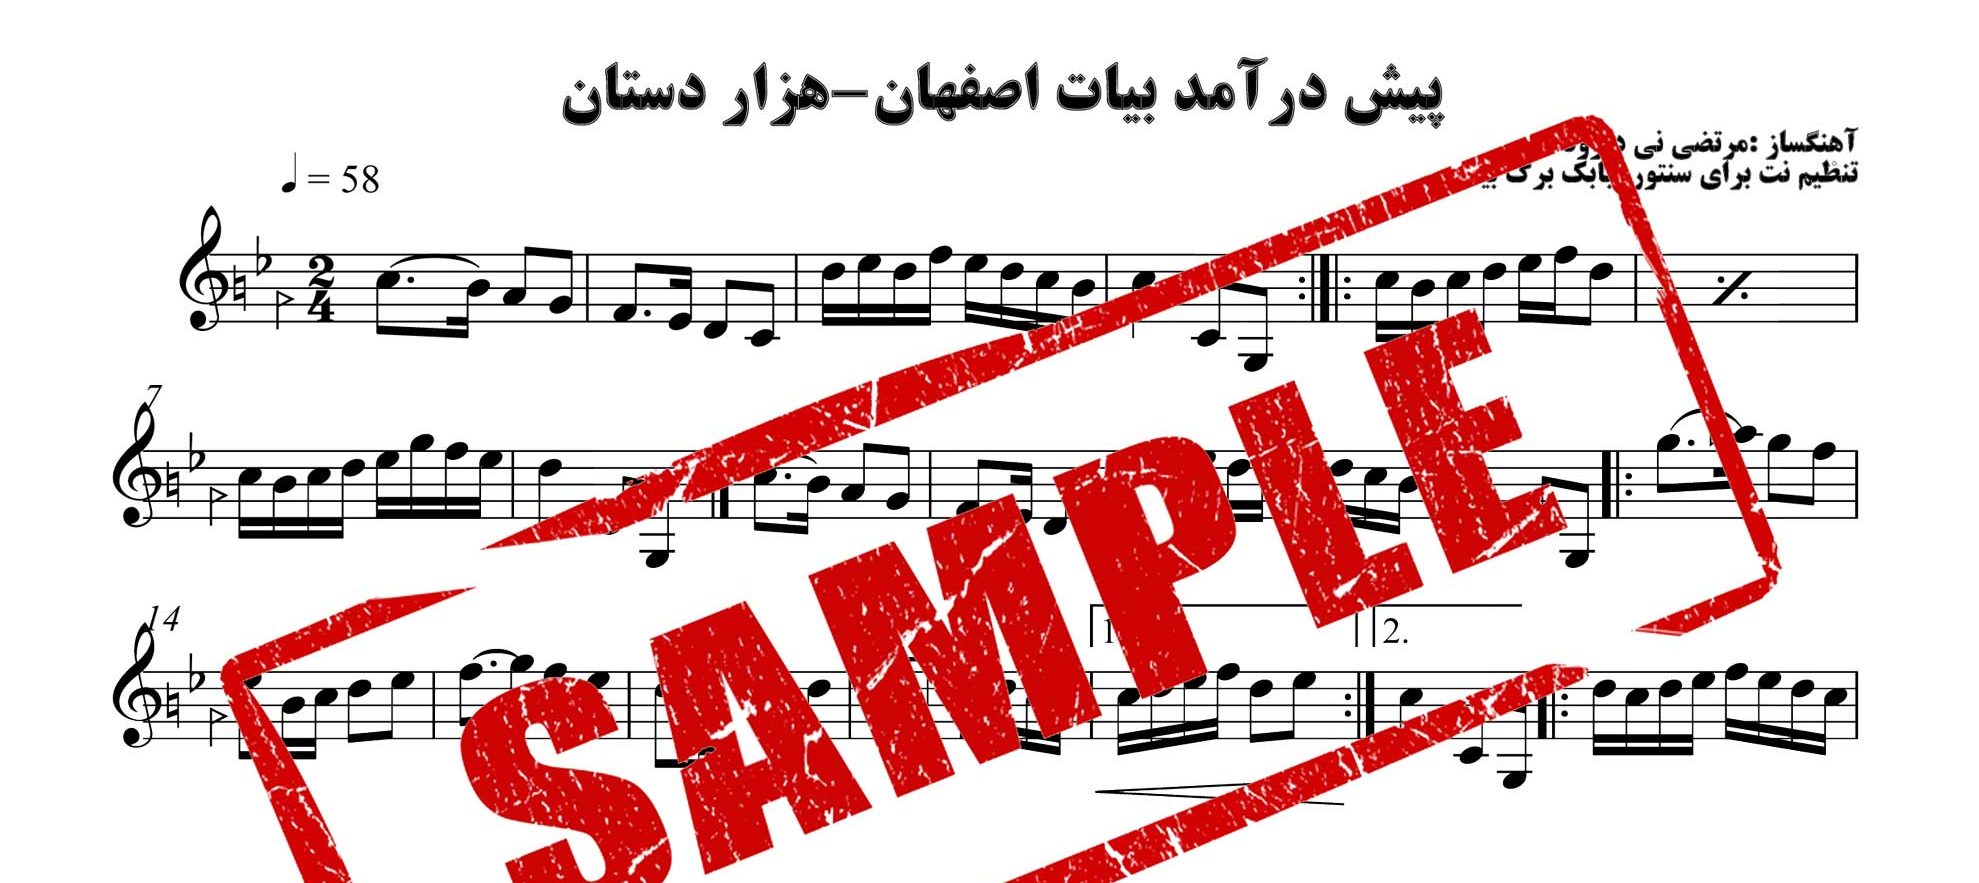 نت سنتور هزار دستان پیش درآمد بیات اصفهان